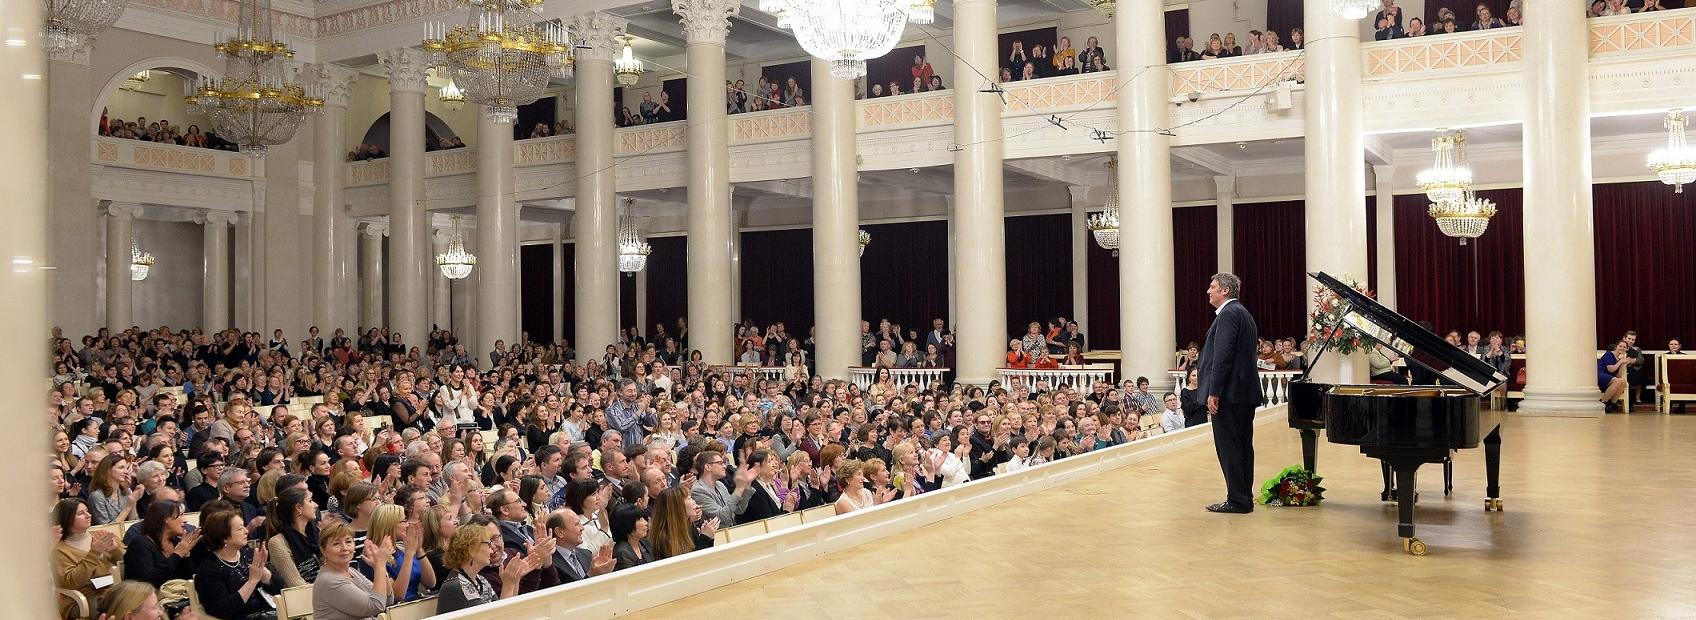 Обложка: Борис Березовский в Большом зале филармонии. Фото: Анна Флегонтова.